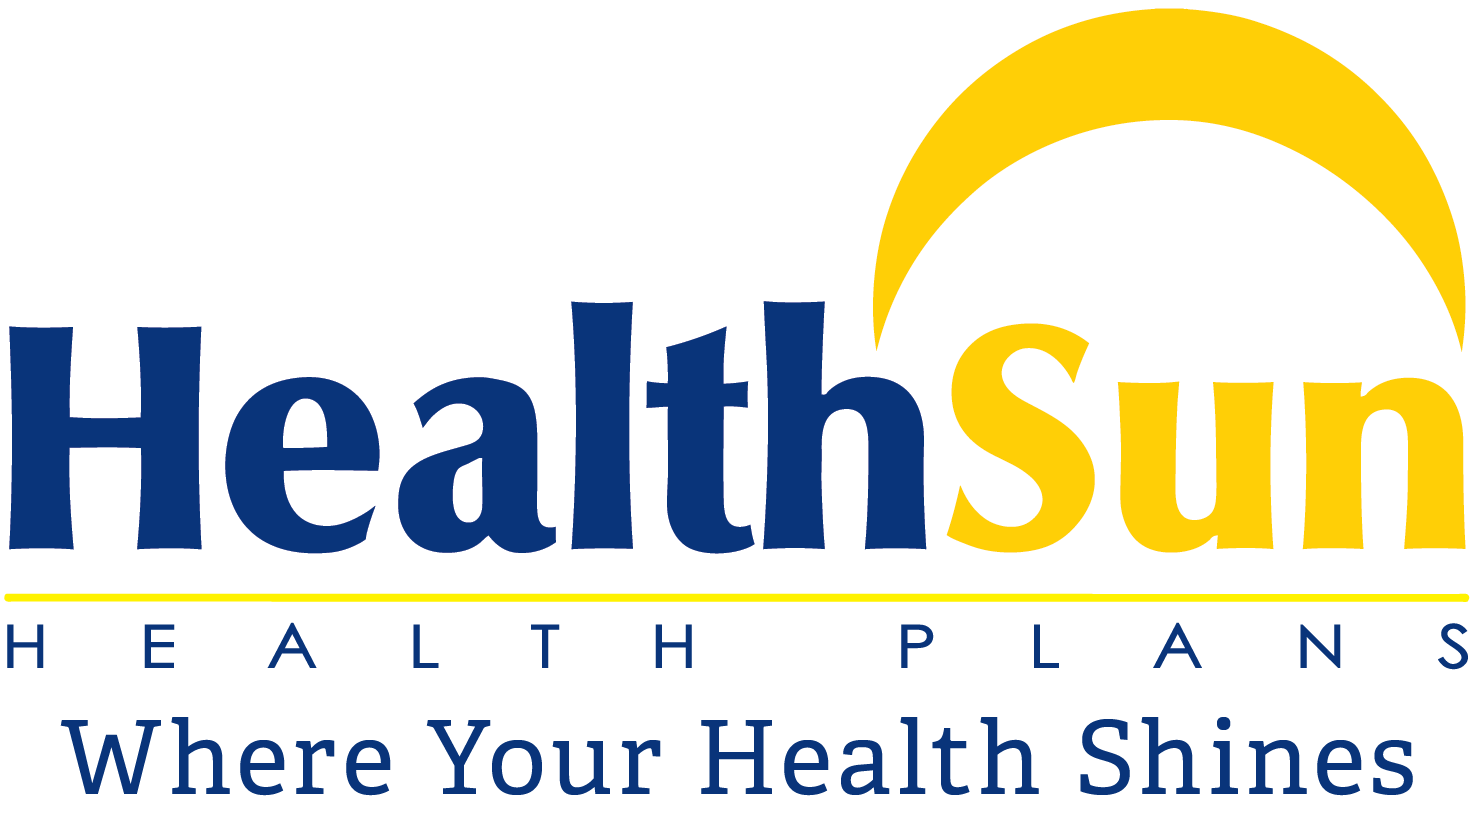 Medicare.gov Logo - Member Resources Health Plans